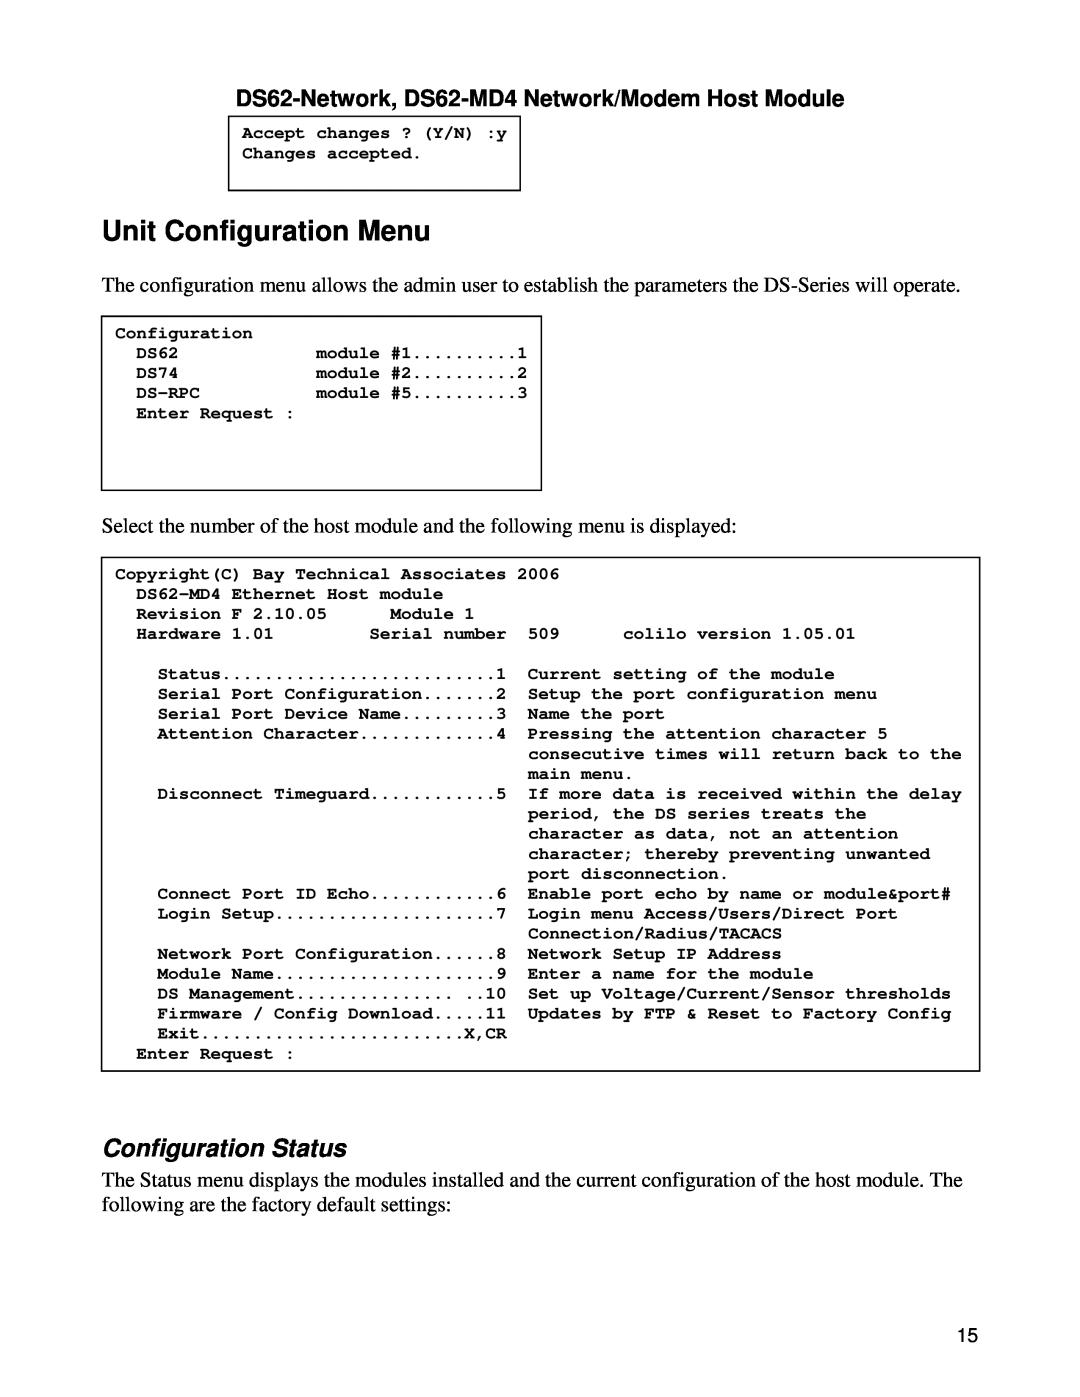 Bay Technical Associates DS62-MD4, DS Series manual Unit Configuration Menu, Configuration Status 